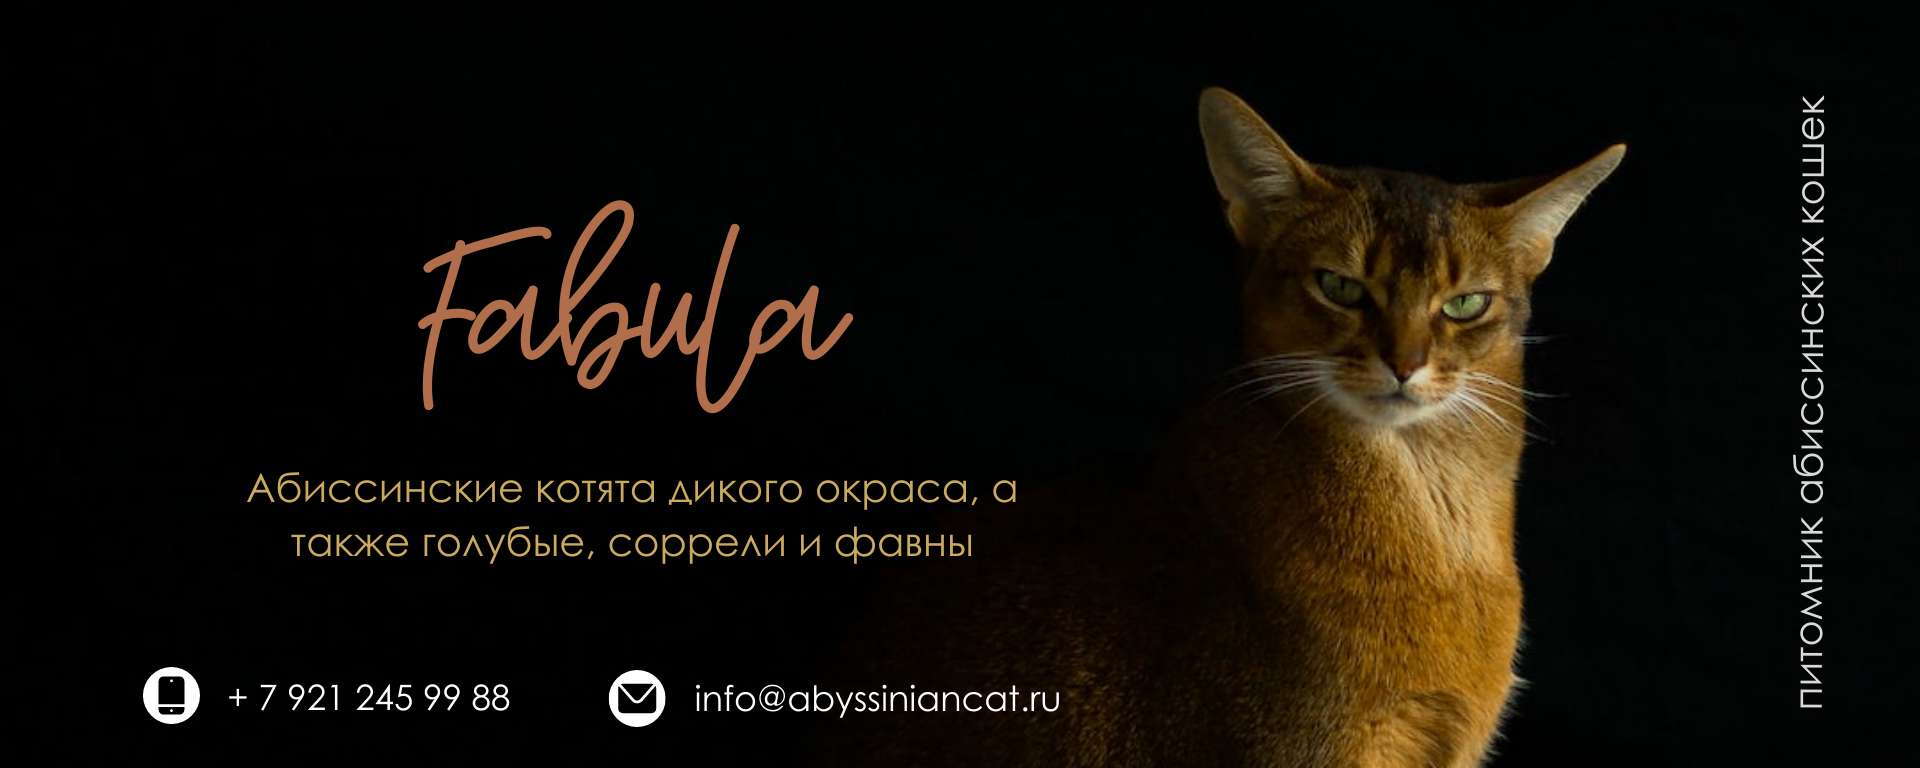 Темная обложка сообщества ВК для питомника абиссинских кошек